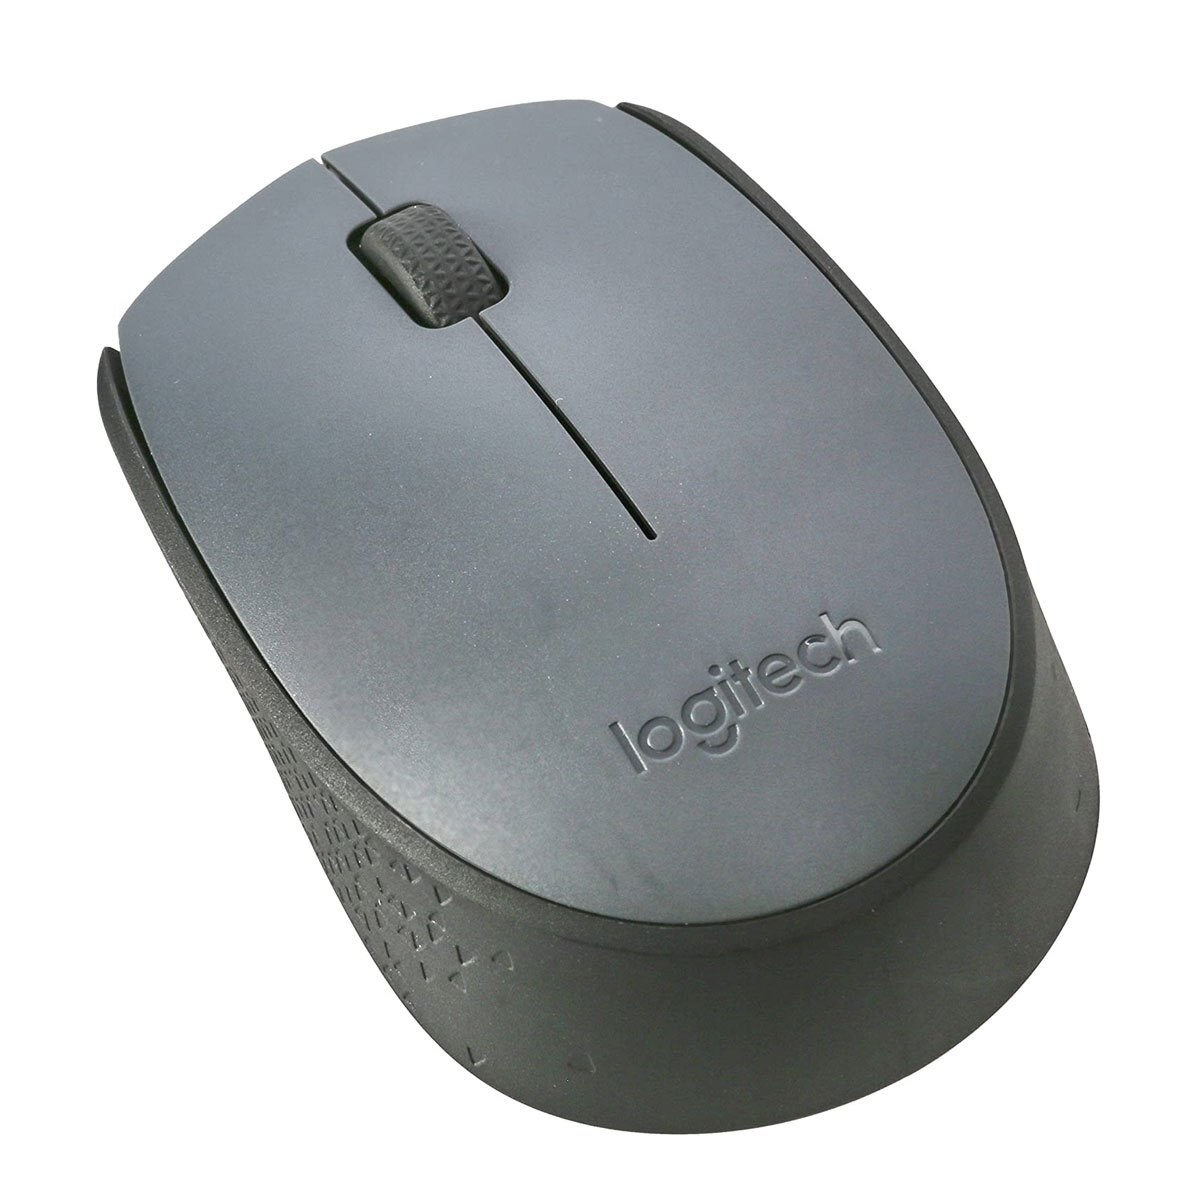 Mouse Gris M170 Logitech